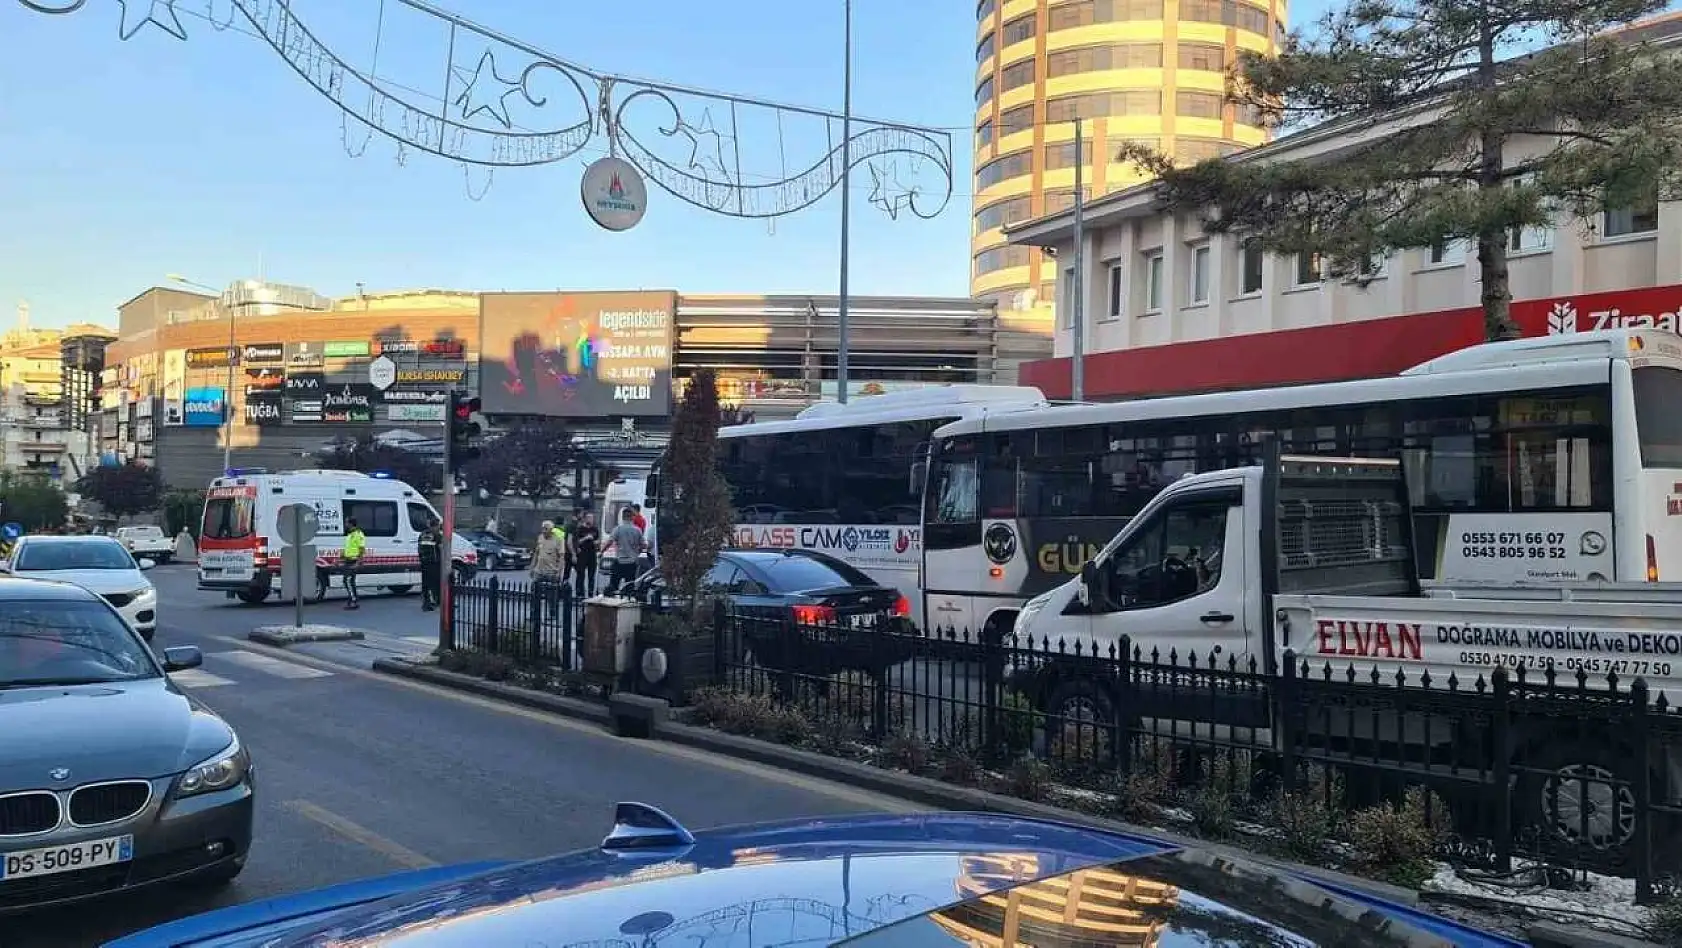 Nevşehir'de freni patlayan halk otobüsü önündeki halk otobüsüne çarptı: 9 yaralı